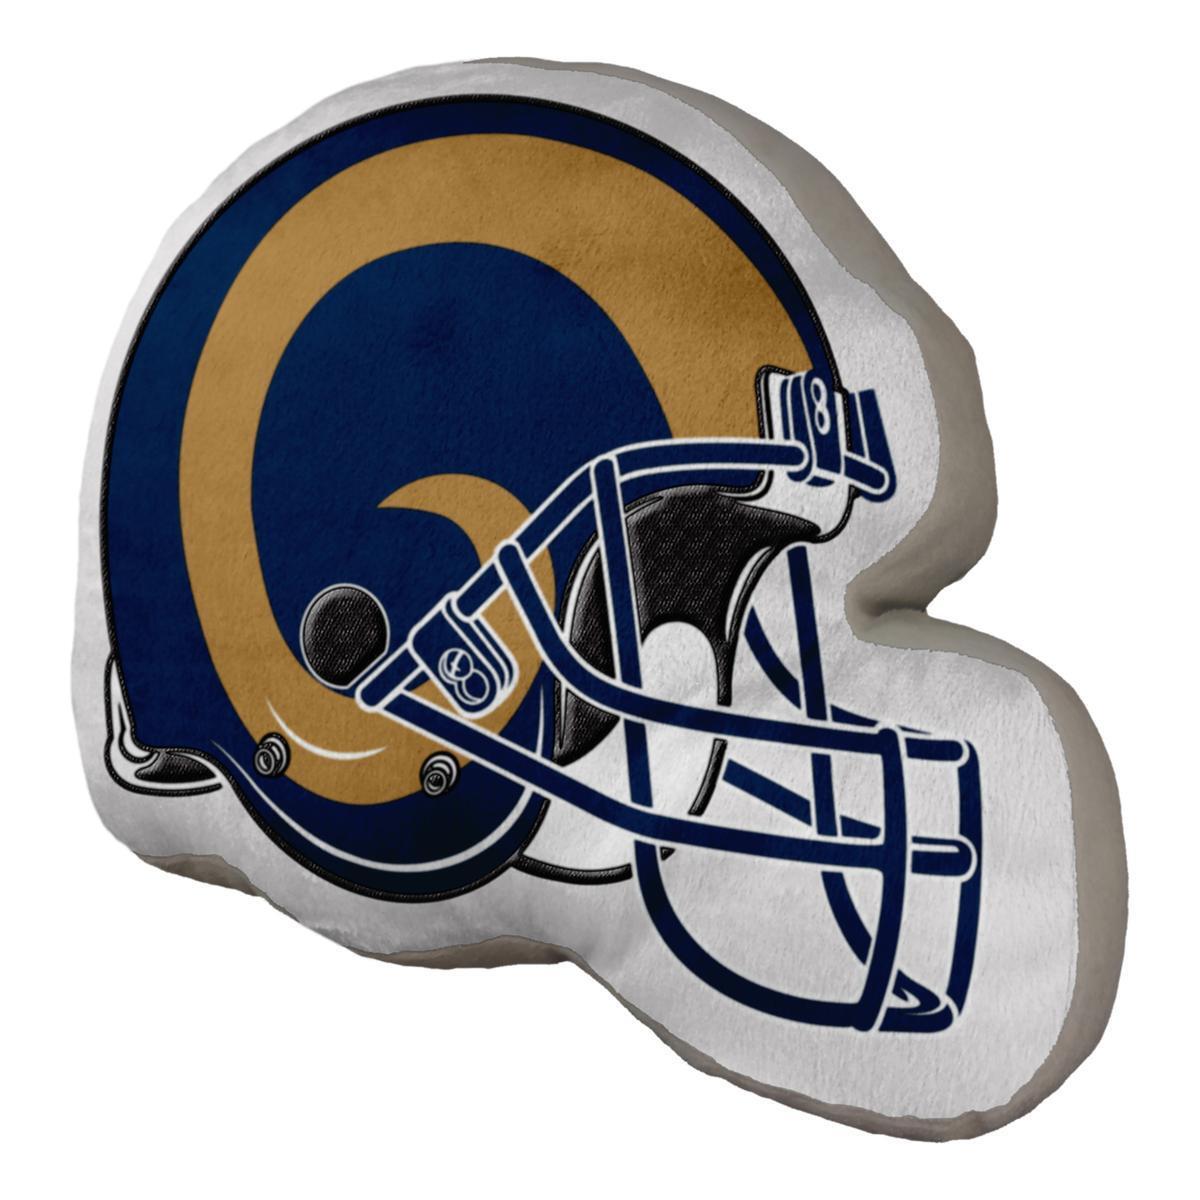 Officially Licensed NFL Helmet Pillow 517910-J (Rams)